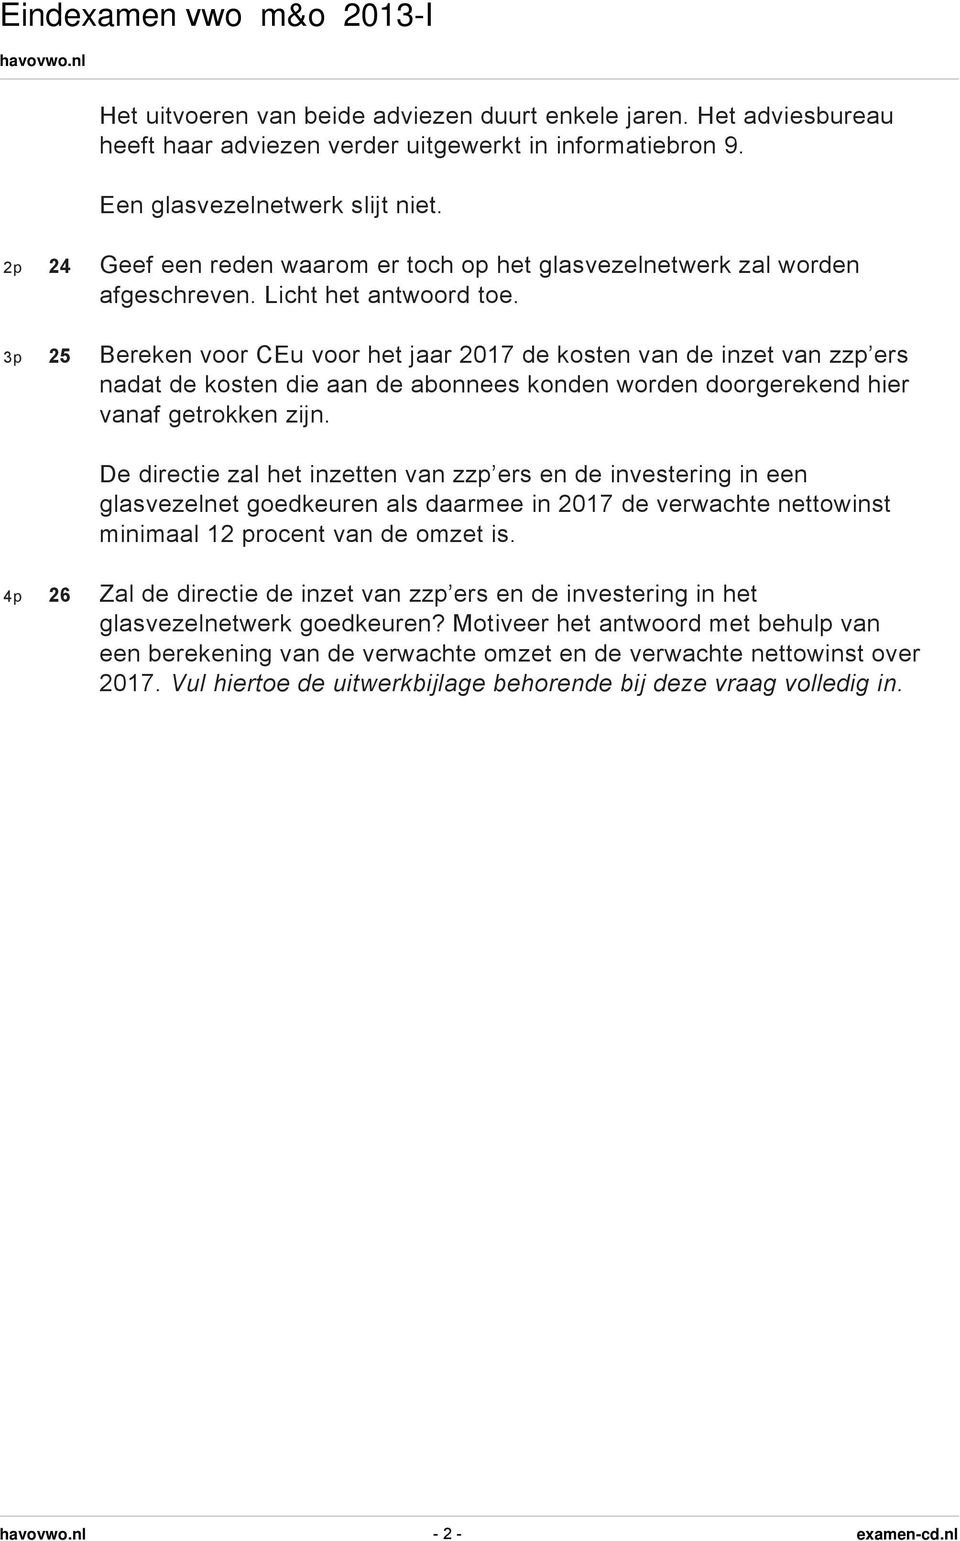 3p 25 Bereken voor CEu voor het jaar 2017 de kosten van de inzet van zzp ers nadat de kosten die aan de abonnees konden worden doorgerekend hier vanaf getrokken zijn.